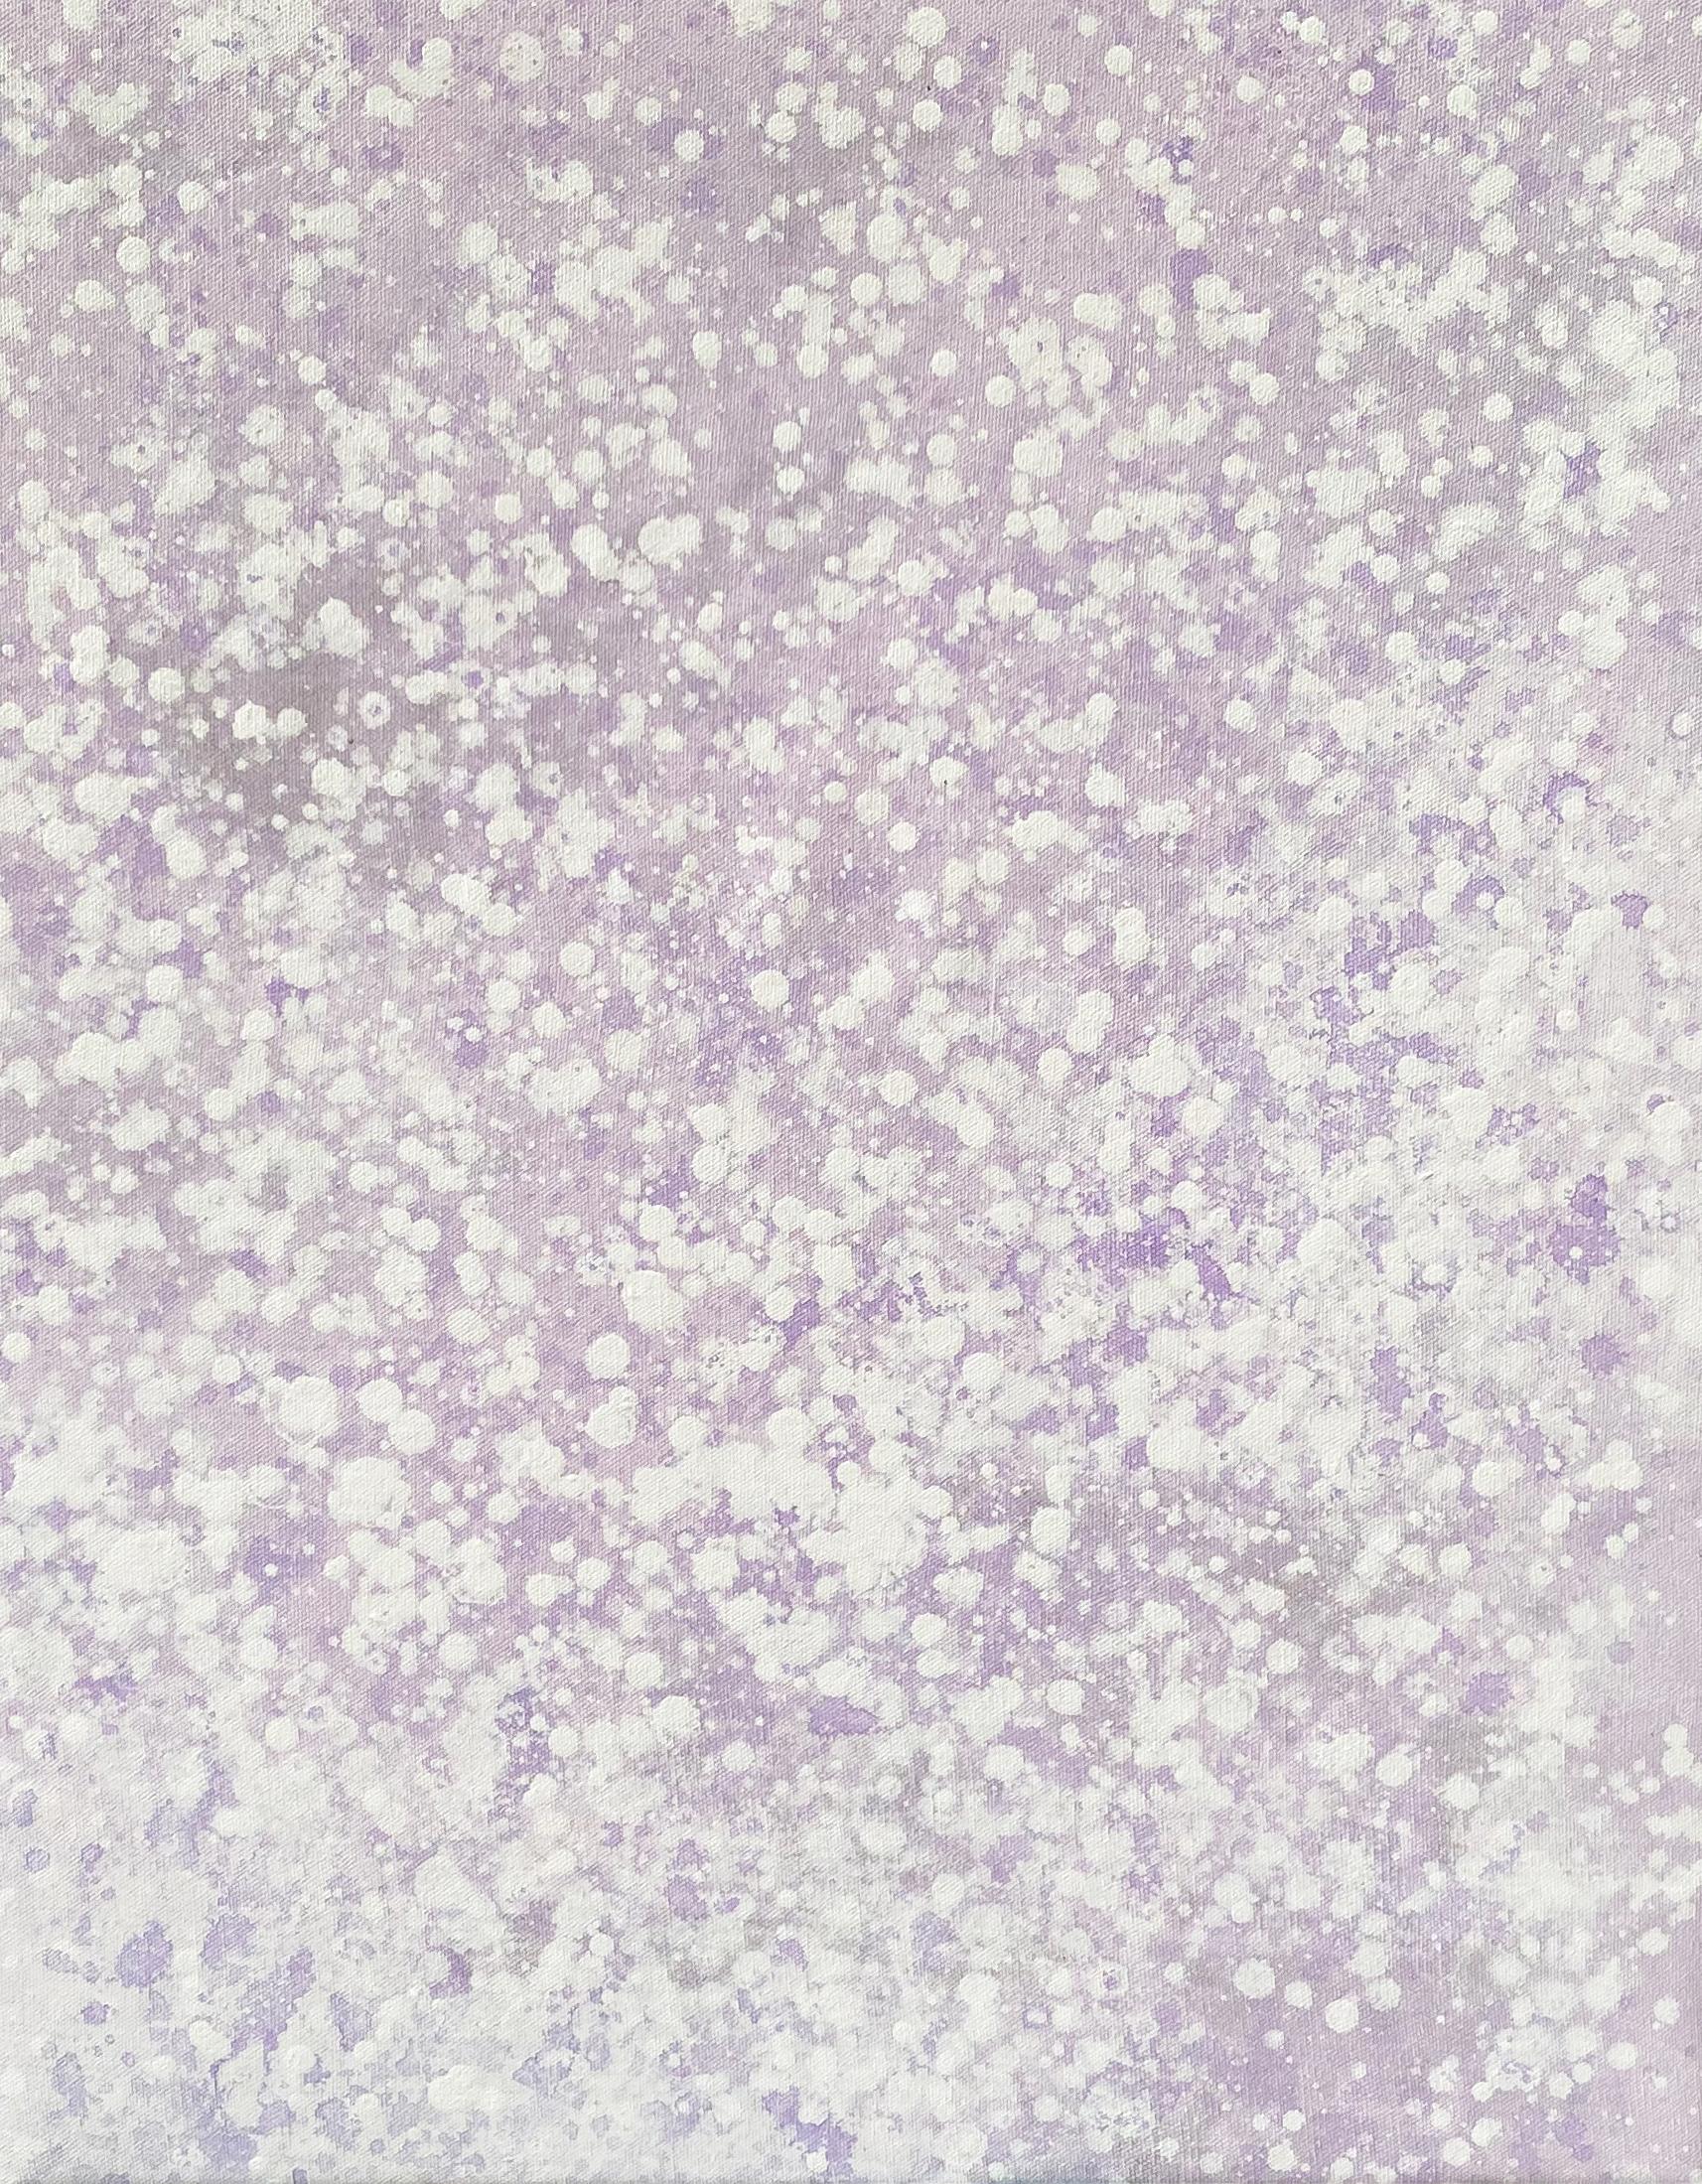 Kathleen Rhee Abstract Painting – Seine verschneite Pastell lavendelfarbene abstrakte minimale expressionistische moderne Malerei Punkte